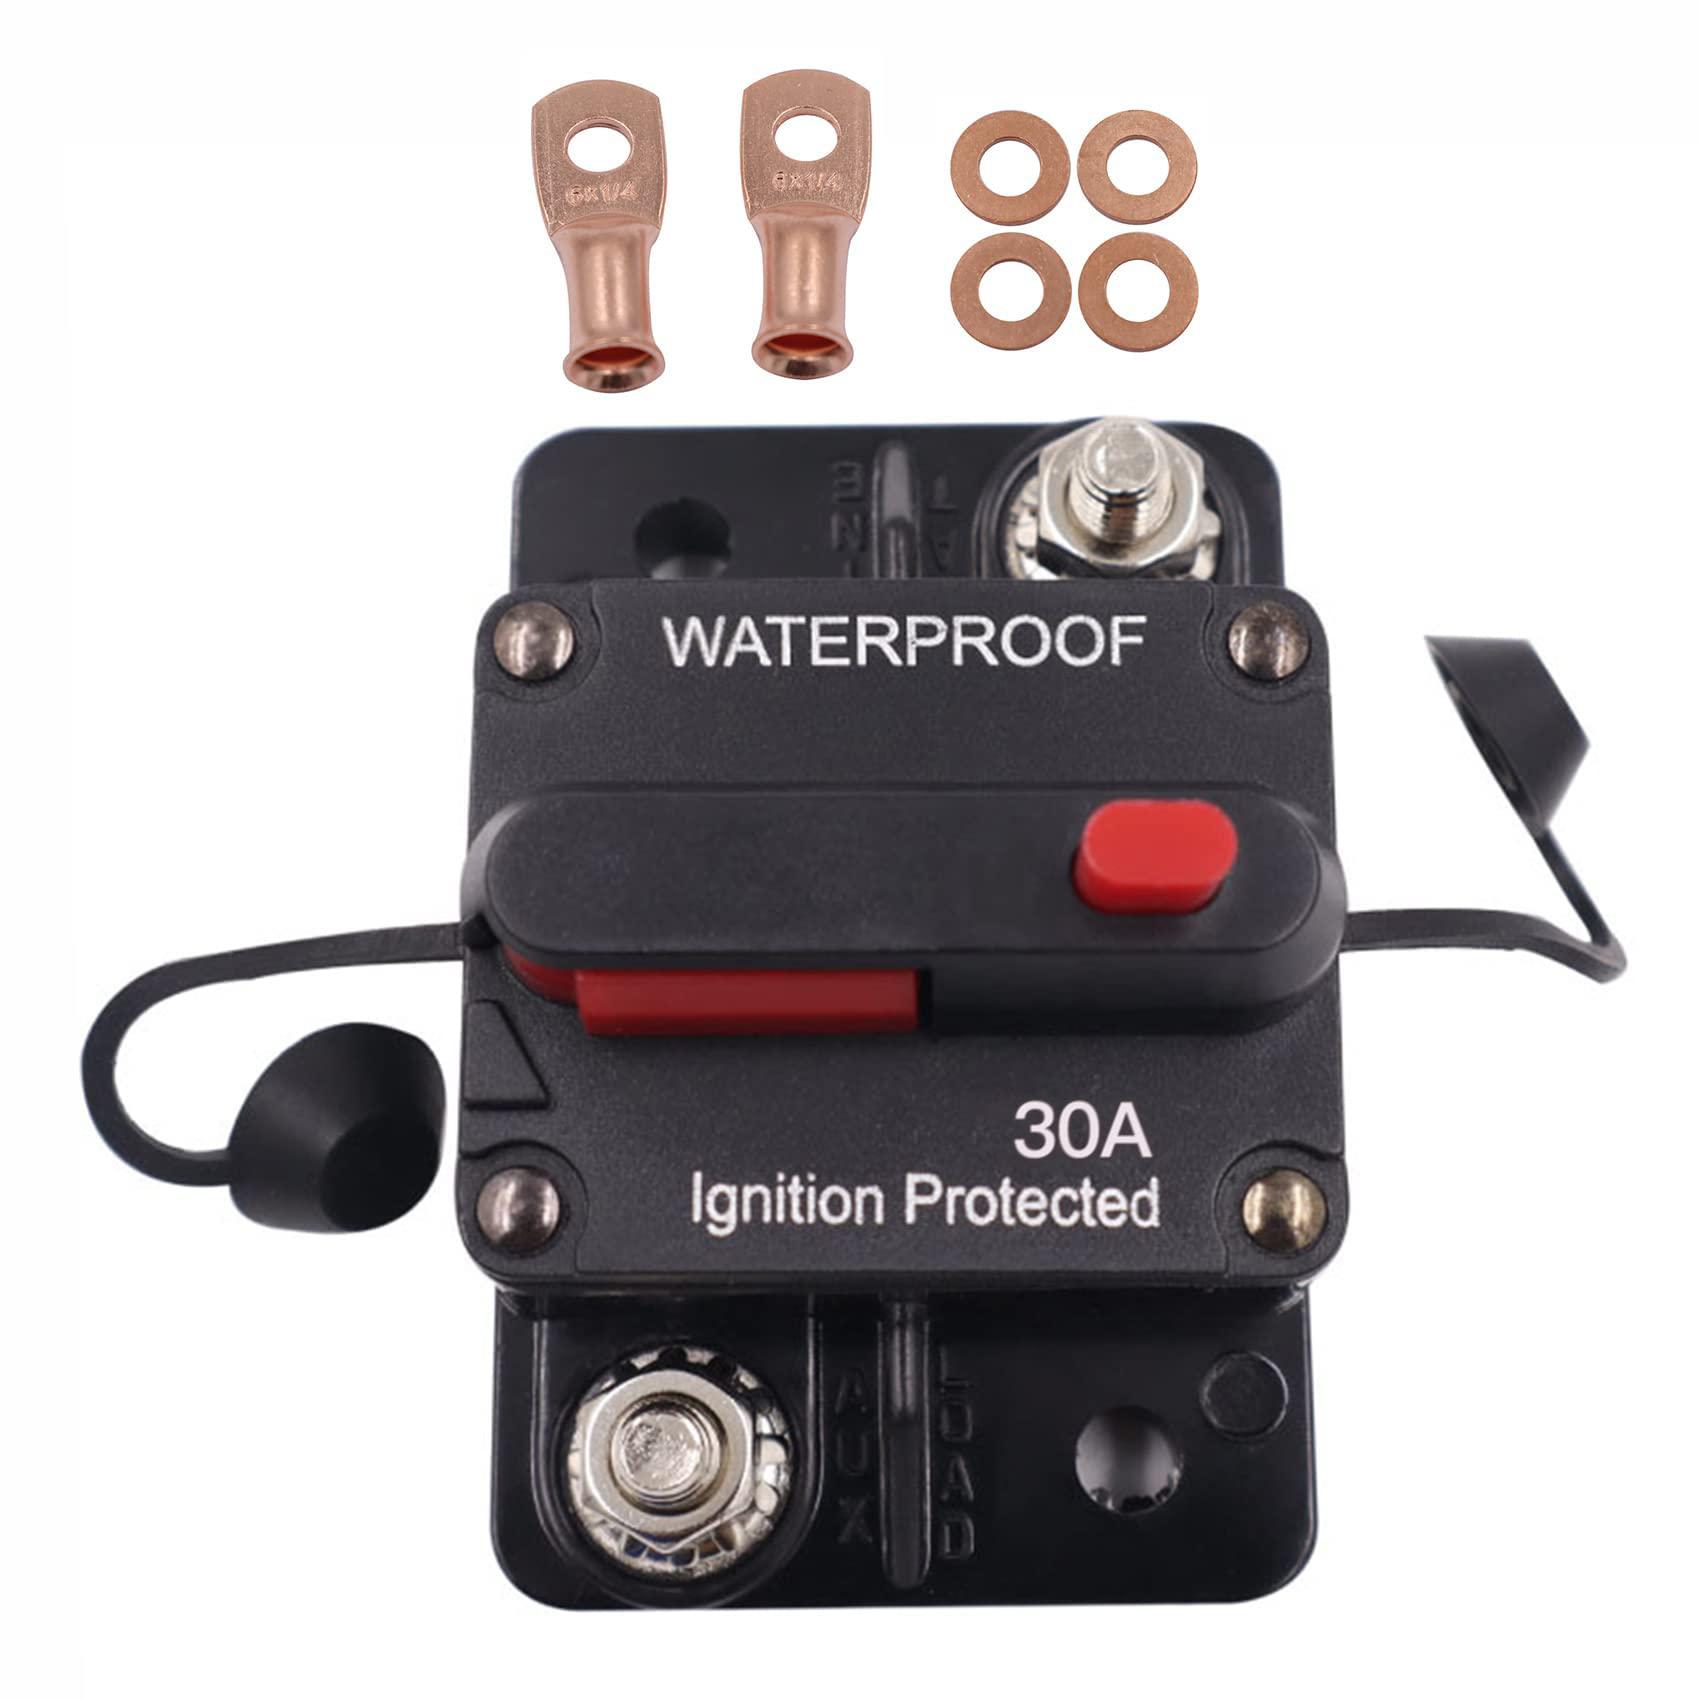 jacaween 30 amp waterproof circuit breaker,with manual reset,12v-48v dc, for car marine trolling motors boat atv manual power